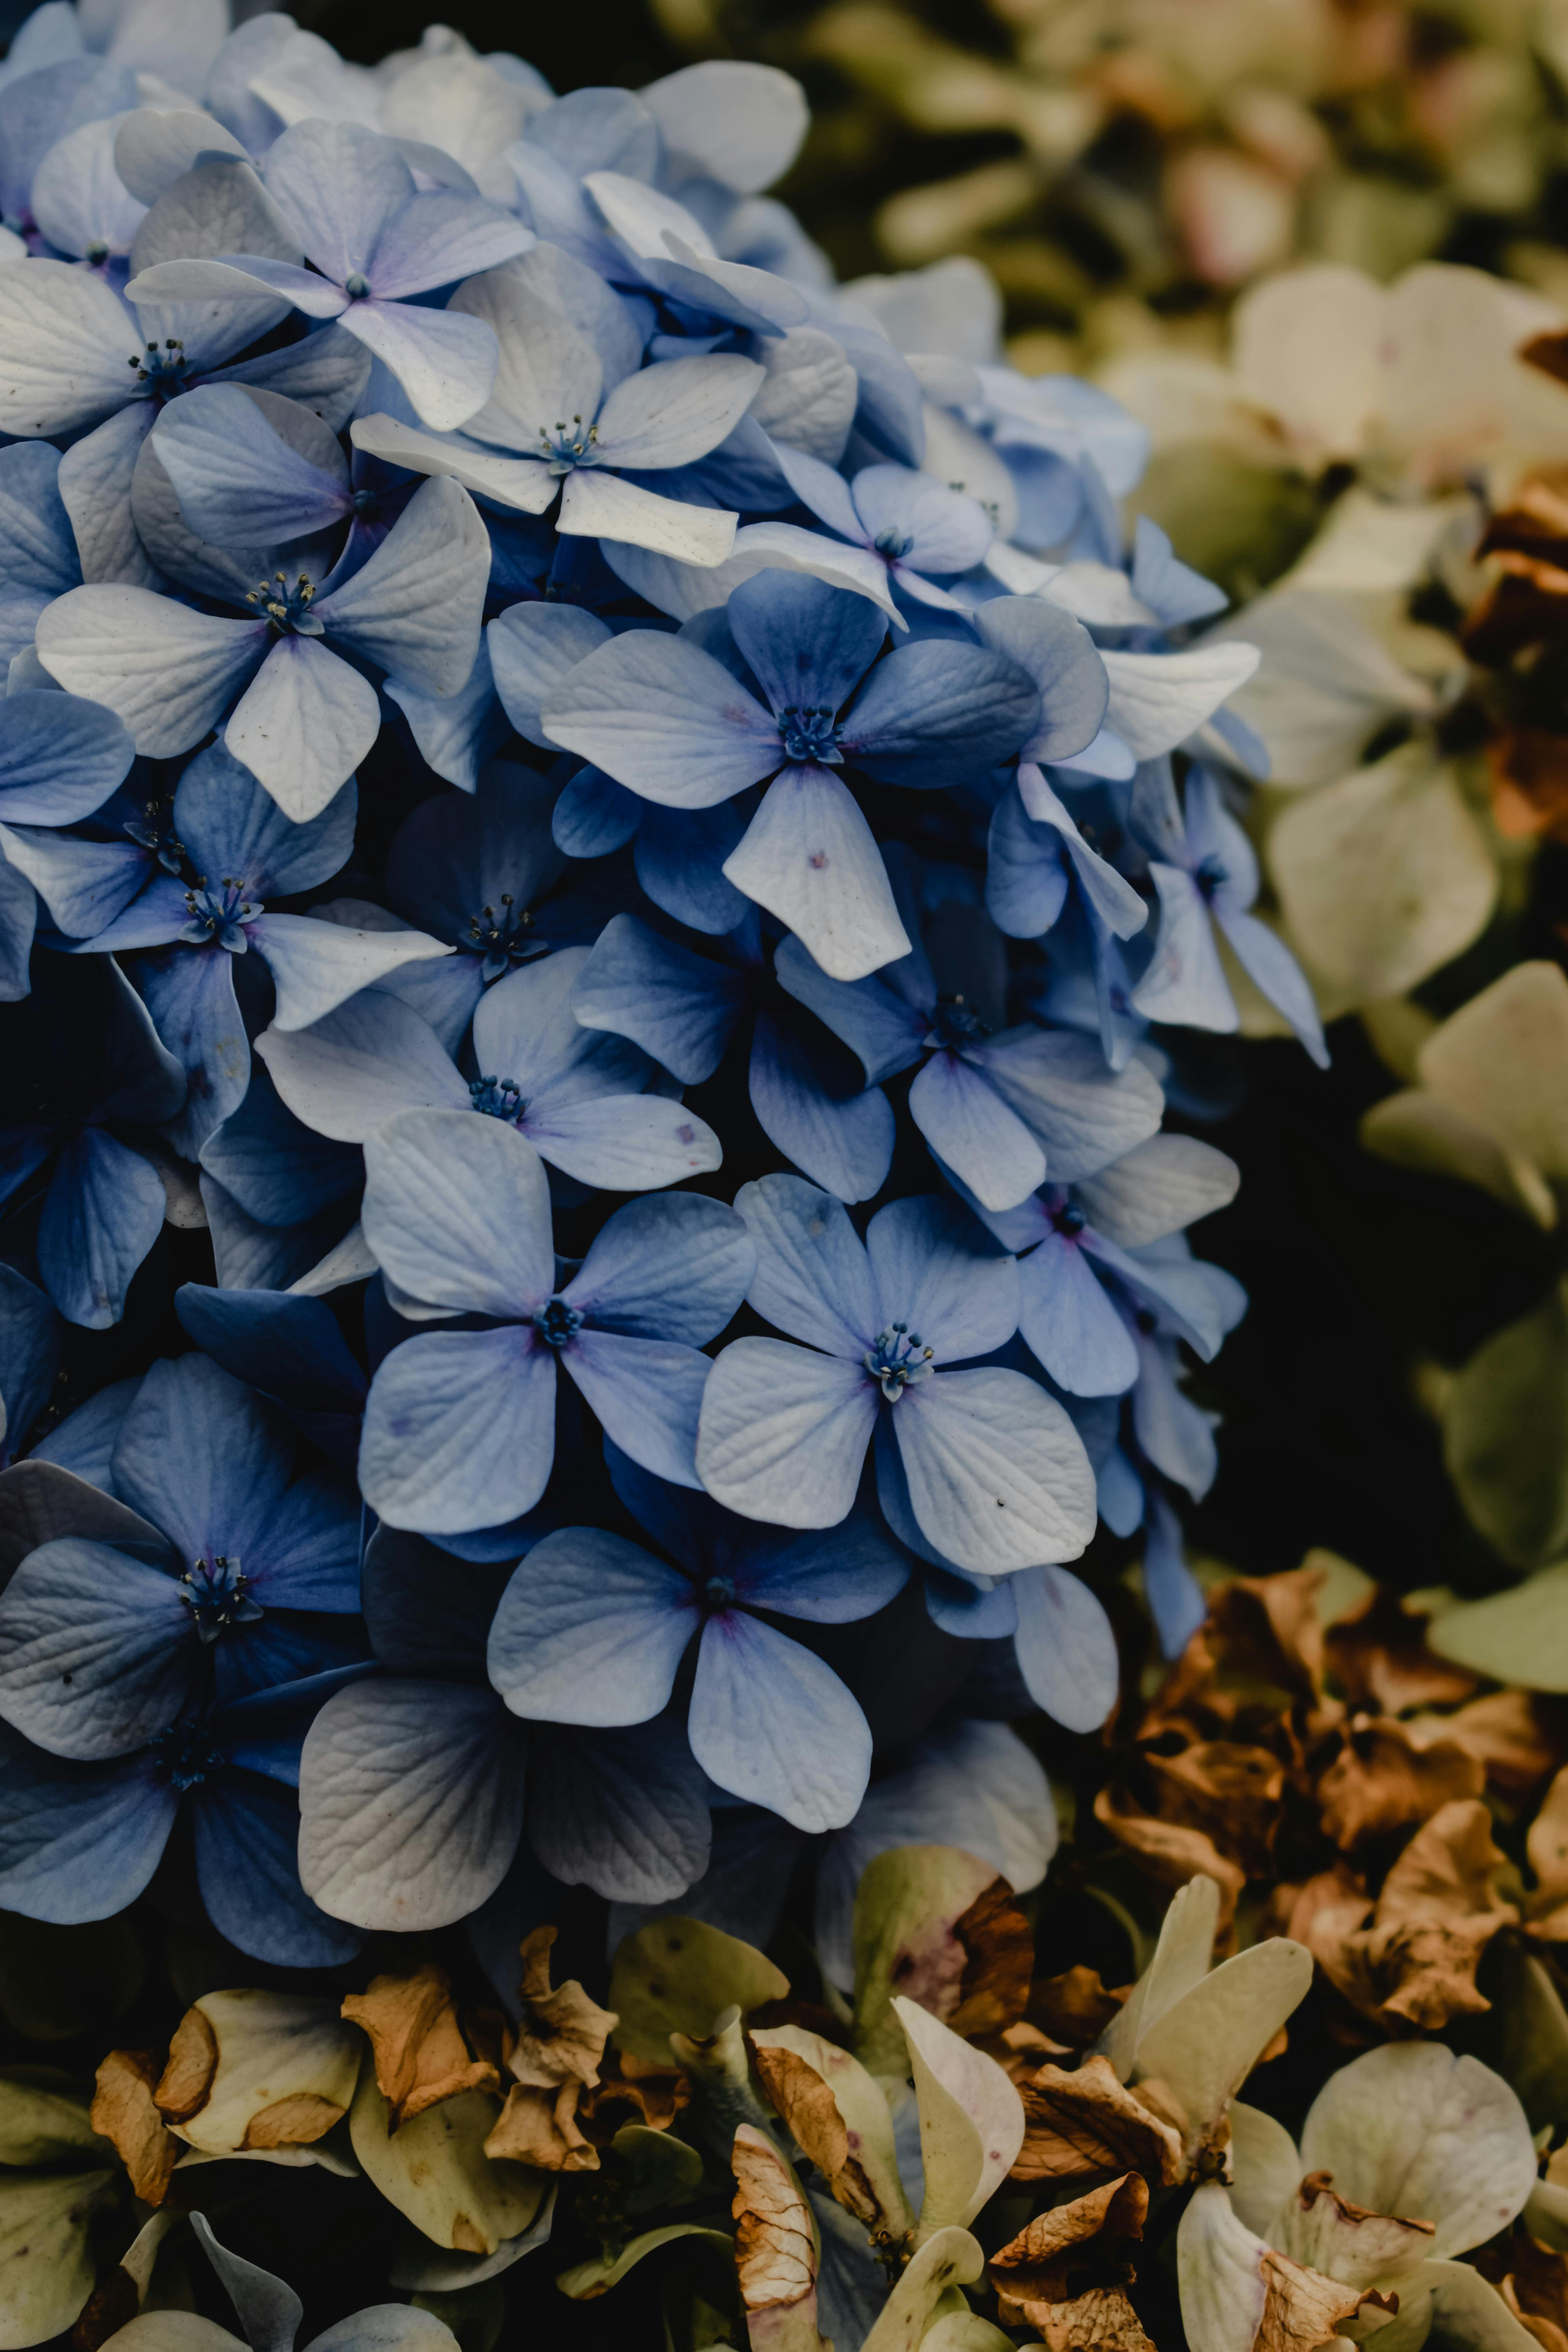 Ảnh đẹp về hoa cẩm tú cầu sẽ đưa bạn đến một không gian đầy mơ màng và lãng mạn. Với những tấm ảnh tươi sáng, lung linh và tinh tế, bạn sẽ nhận được hứng khởi, cảm hứng cho một ngày mới của mình.